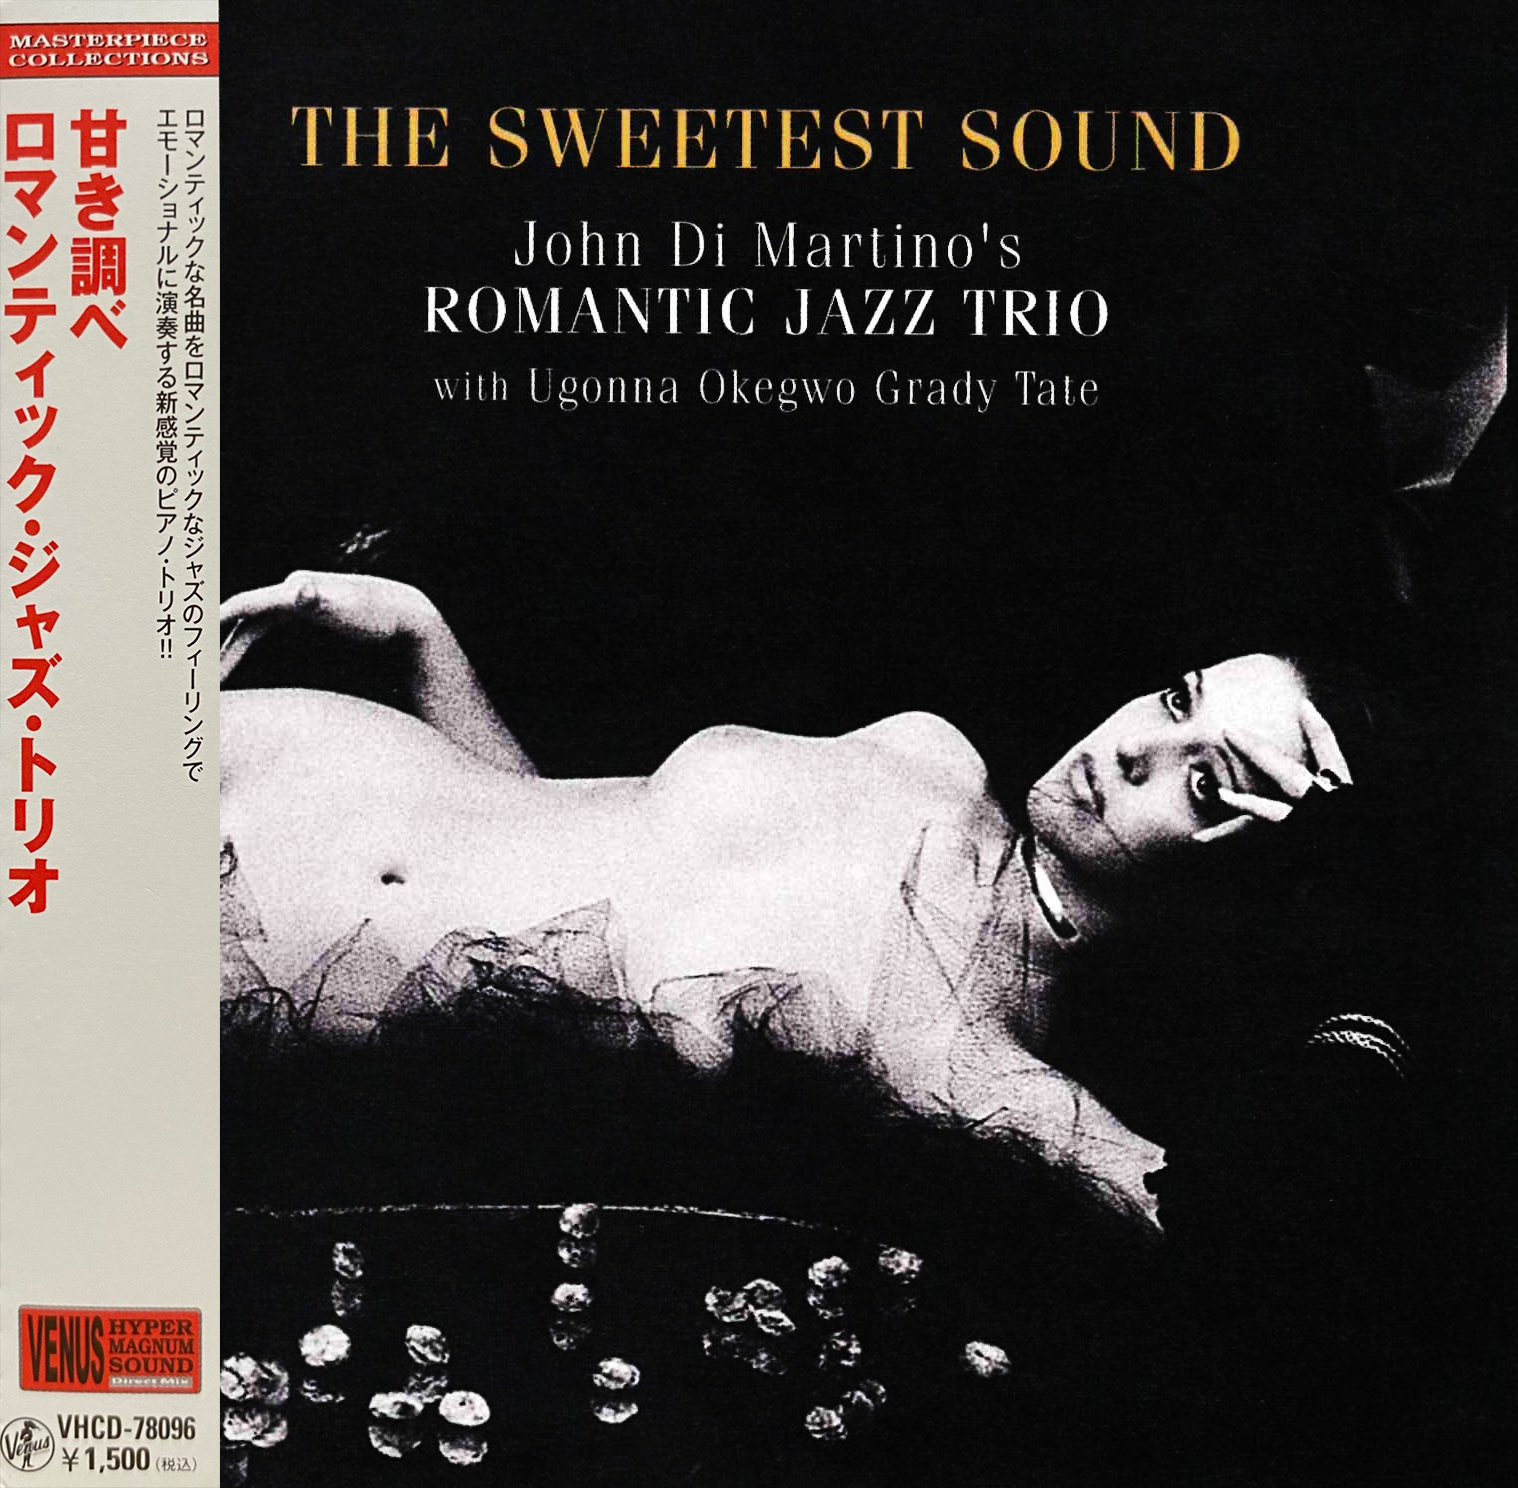 The Sweetest Sound - Romantic Jazz Trio